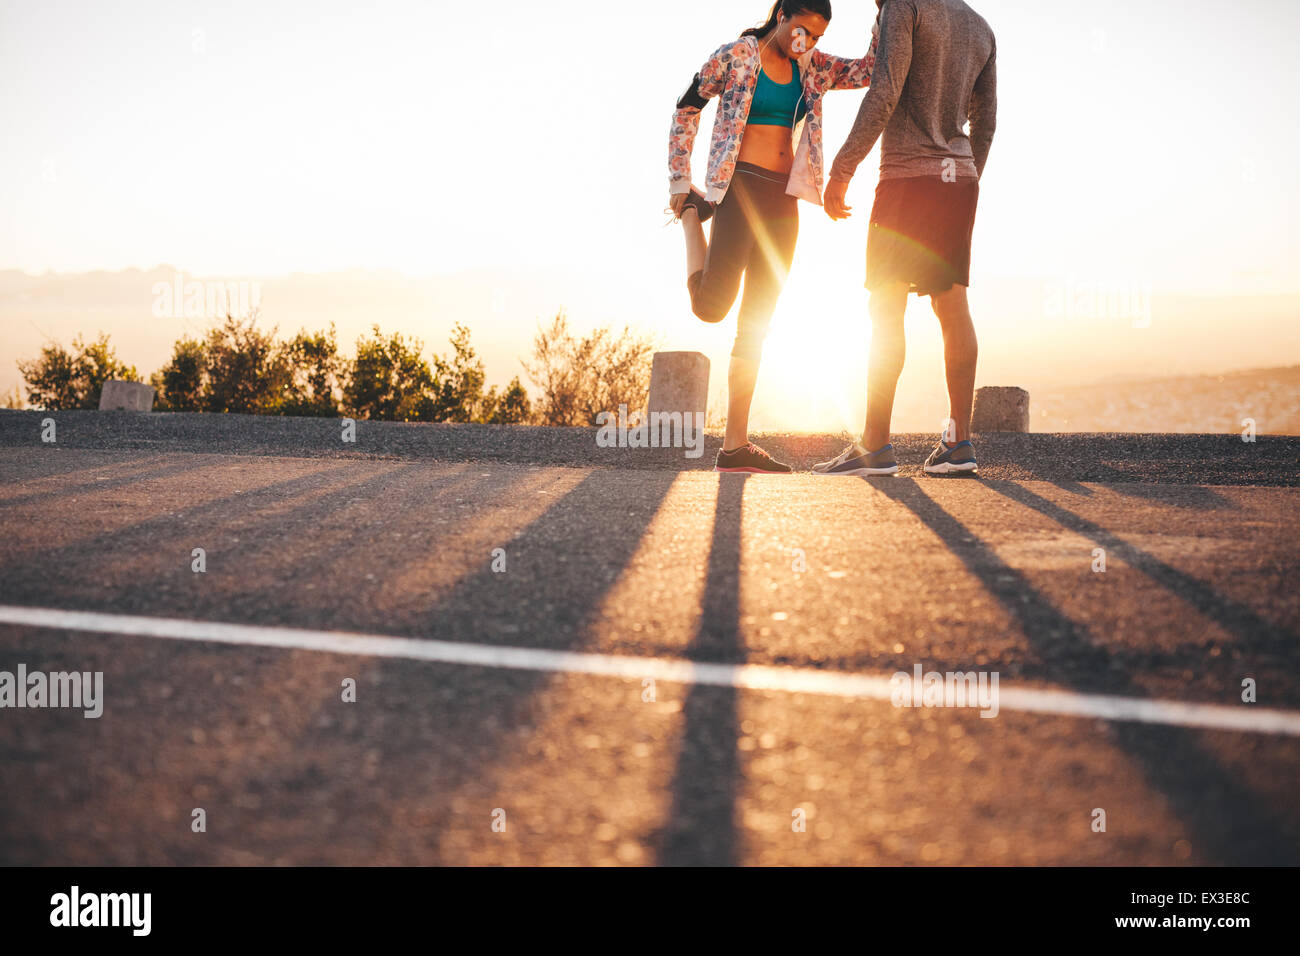 Im Freien Schuss der jungen Jogger dehnen vor einem Lauf Morgen. Junger Mann stehend und Frau dehnen ihre Beine bei Sonnenaufgang. Stockfoto